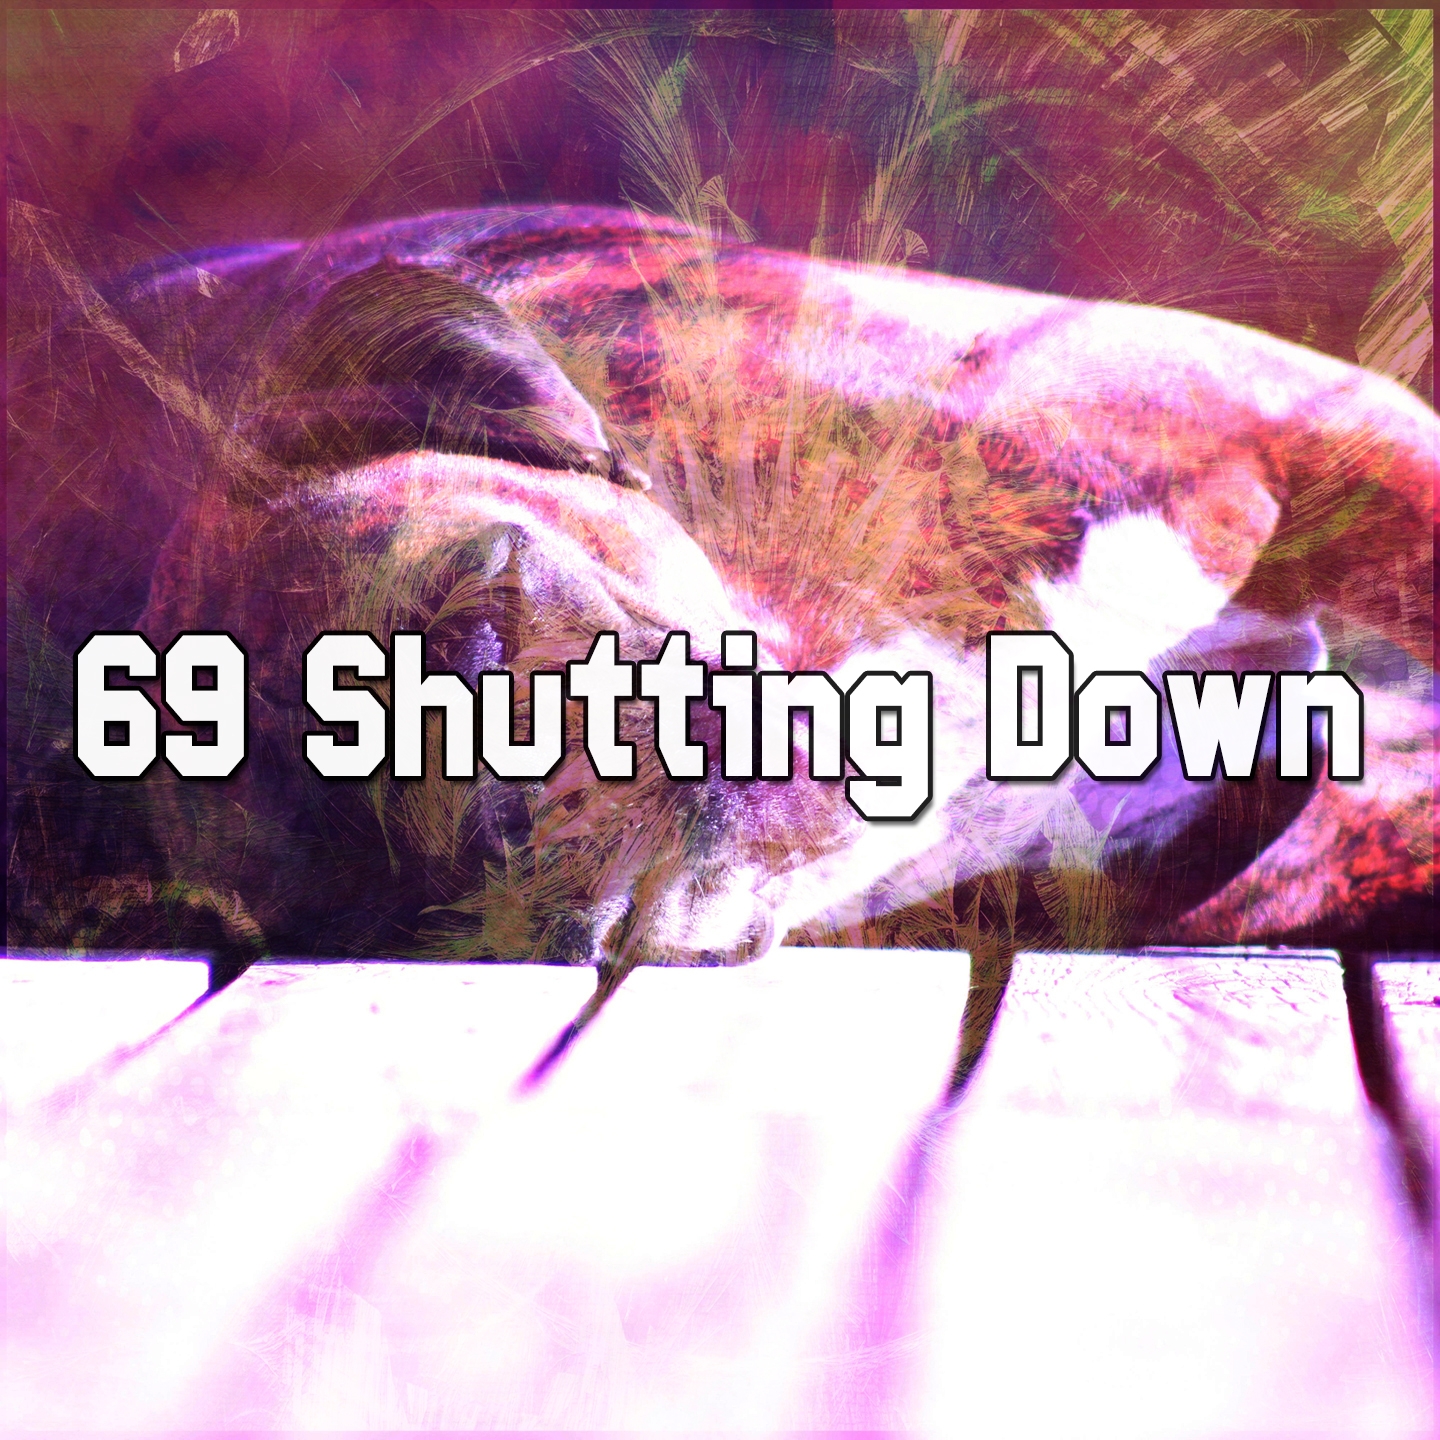 69 Shutting Down